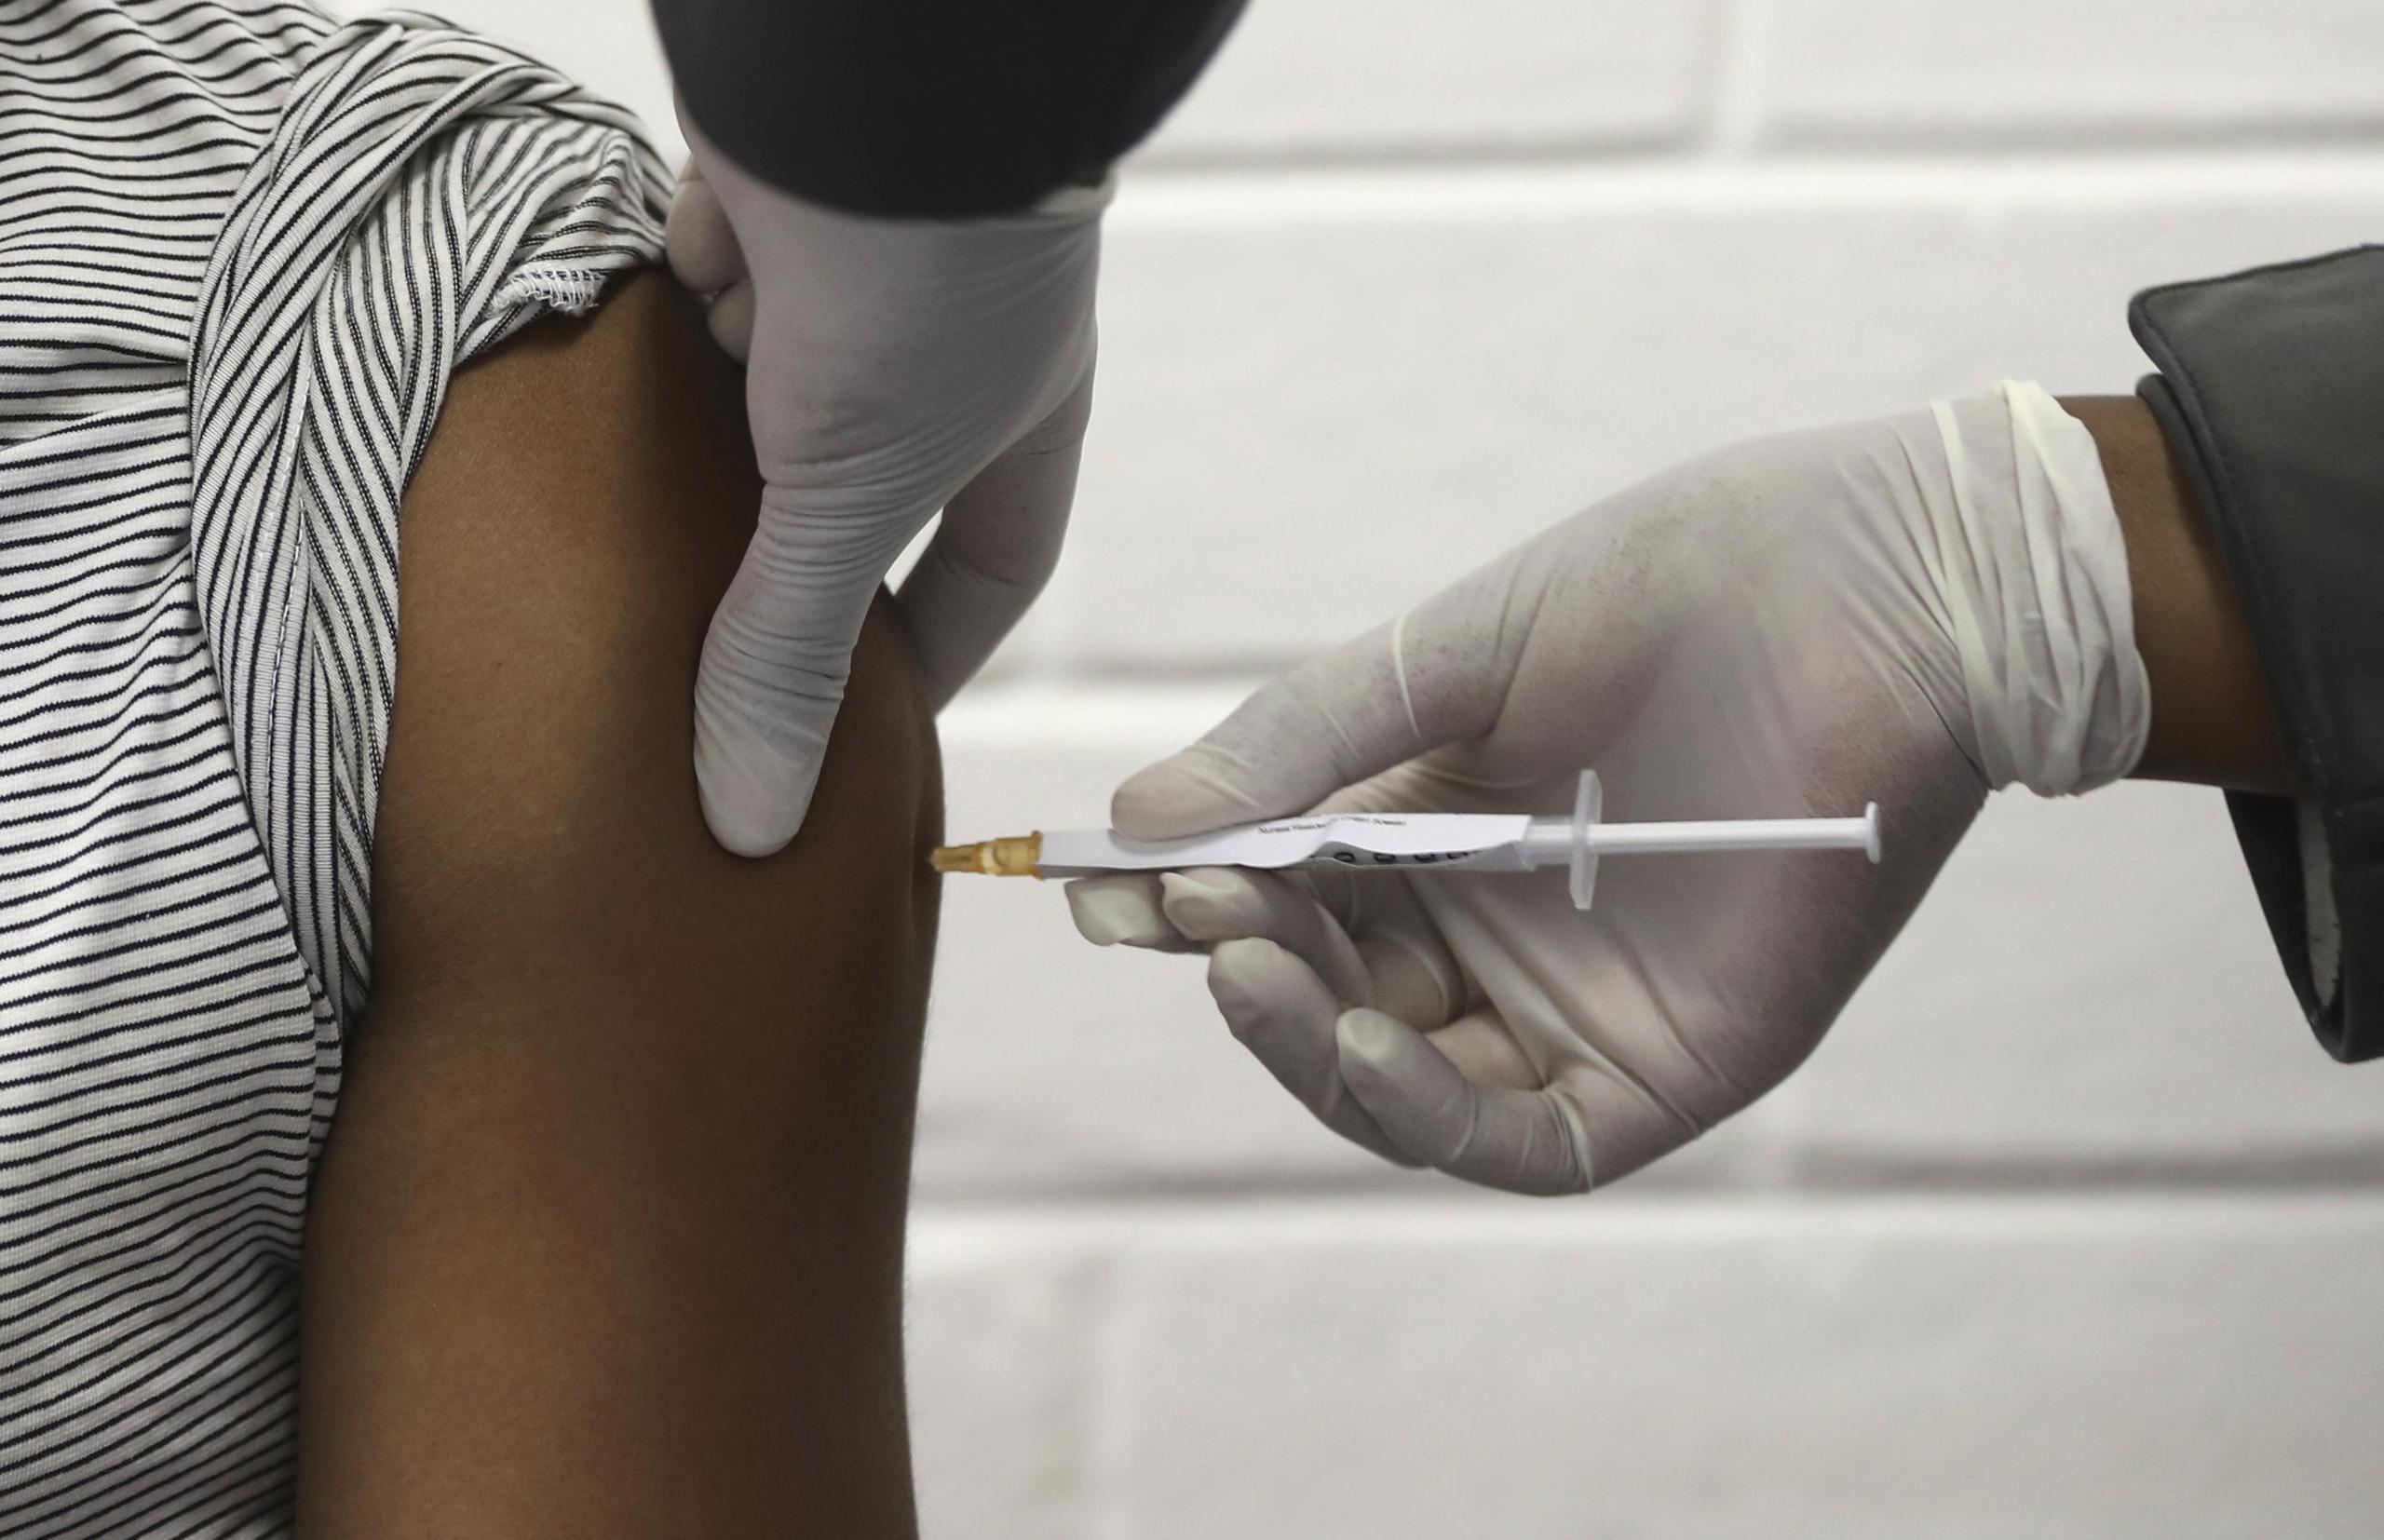 Un voluntario recibe una inyección en el hospital Chris Hani Baragwanath, en Soweto, Sudáfrica, como parte de la primera participación africana en las pruebas de una vacuna para el coronavirus creada por la Universidad de Oxford en colaboración con la firma farmacéutica AstraZeneca.